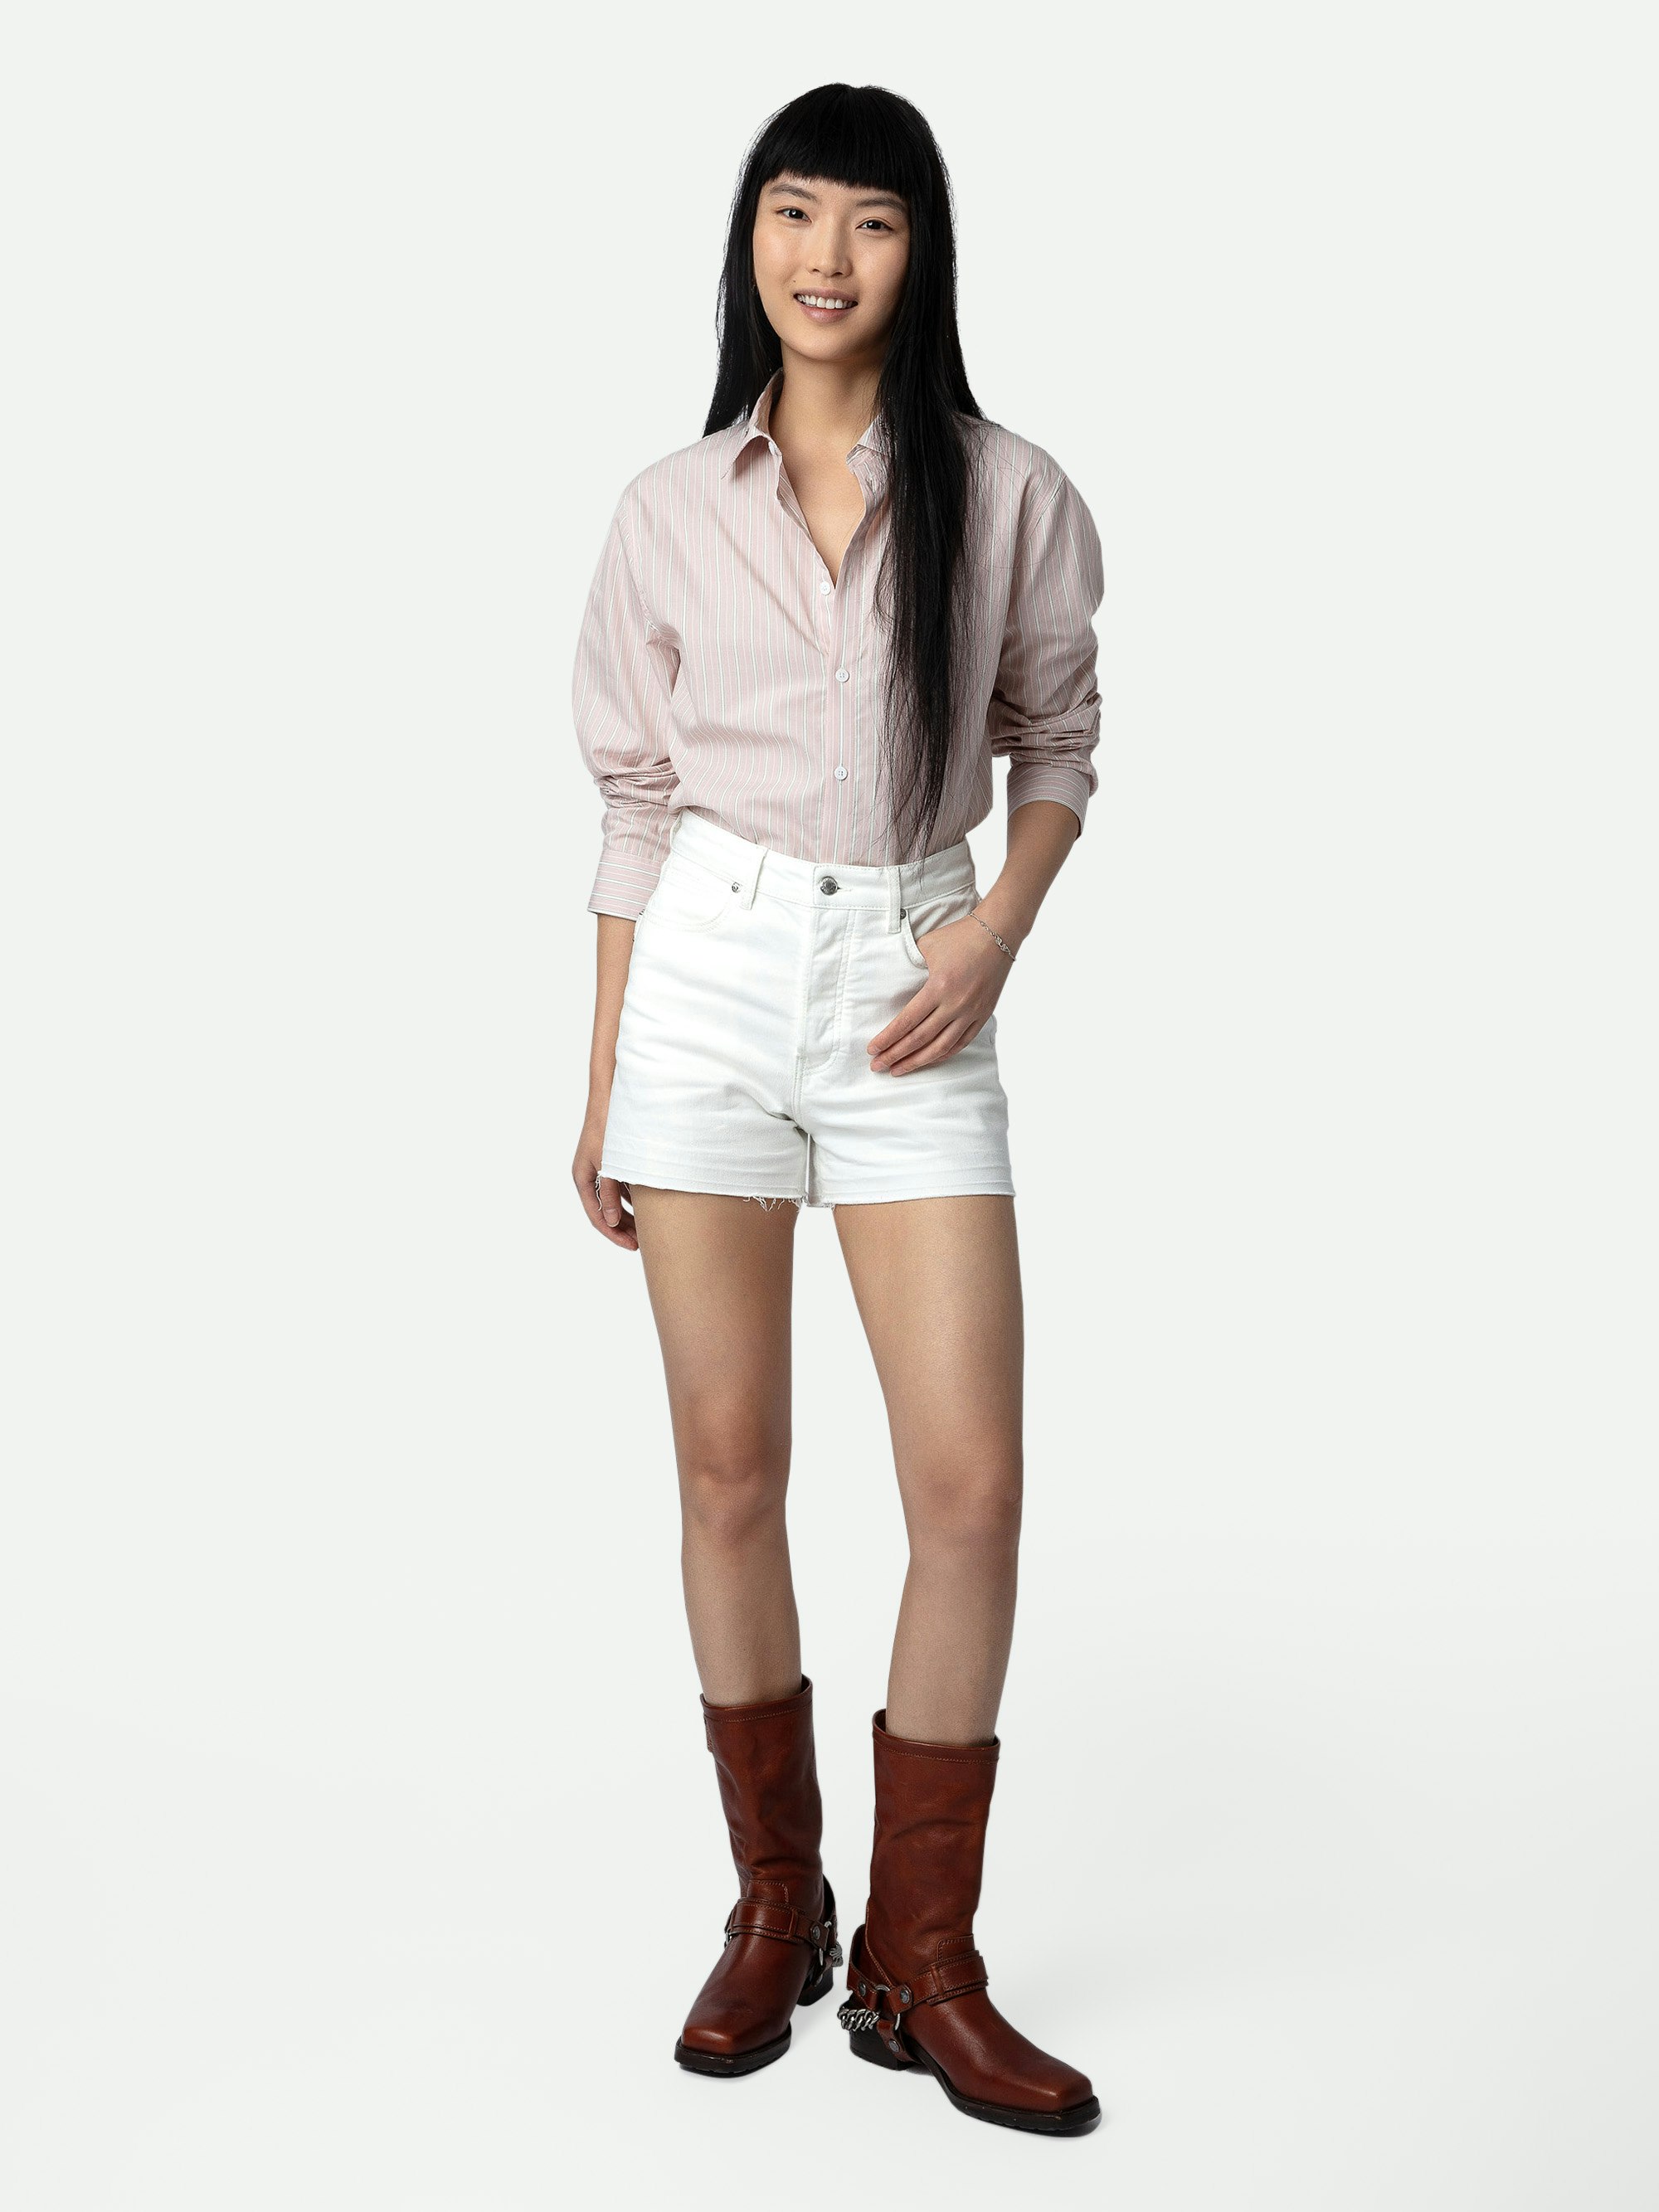 Camicia Sydna - Camicia in cotone rosa pallido a maniche lunghe, righe e personalizzazioni create da Humberto Cruz.